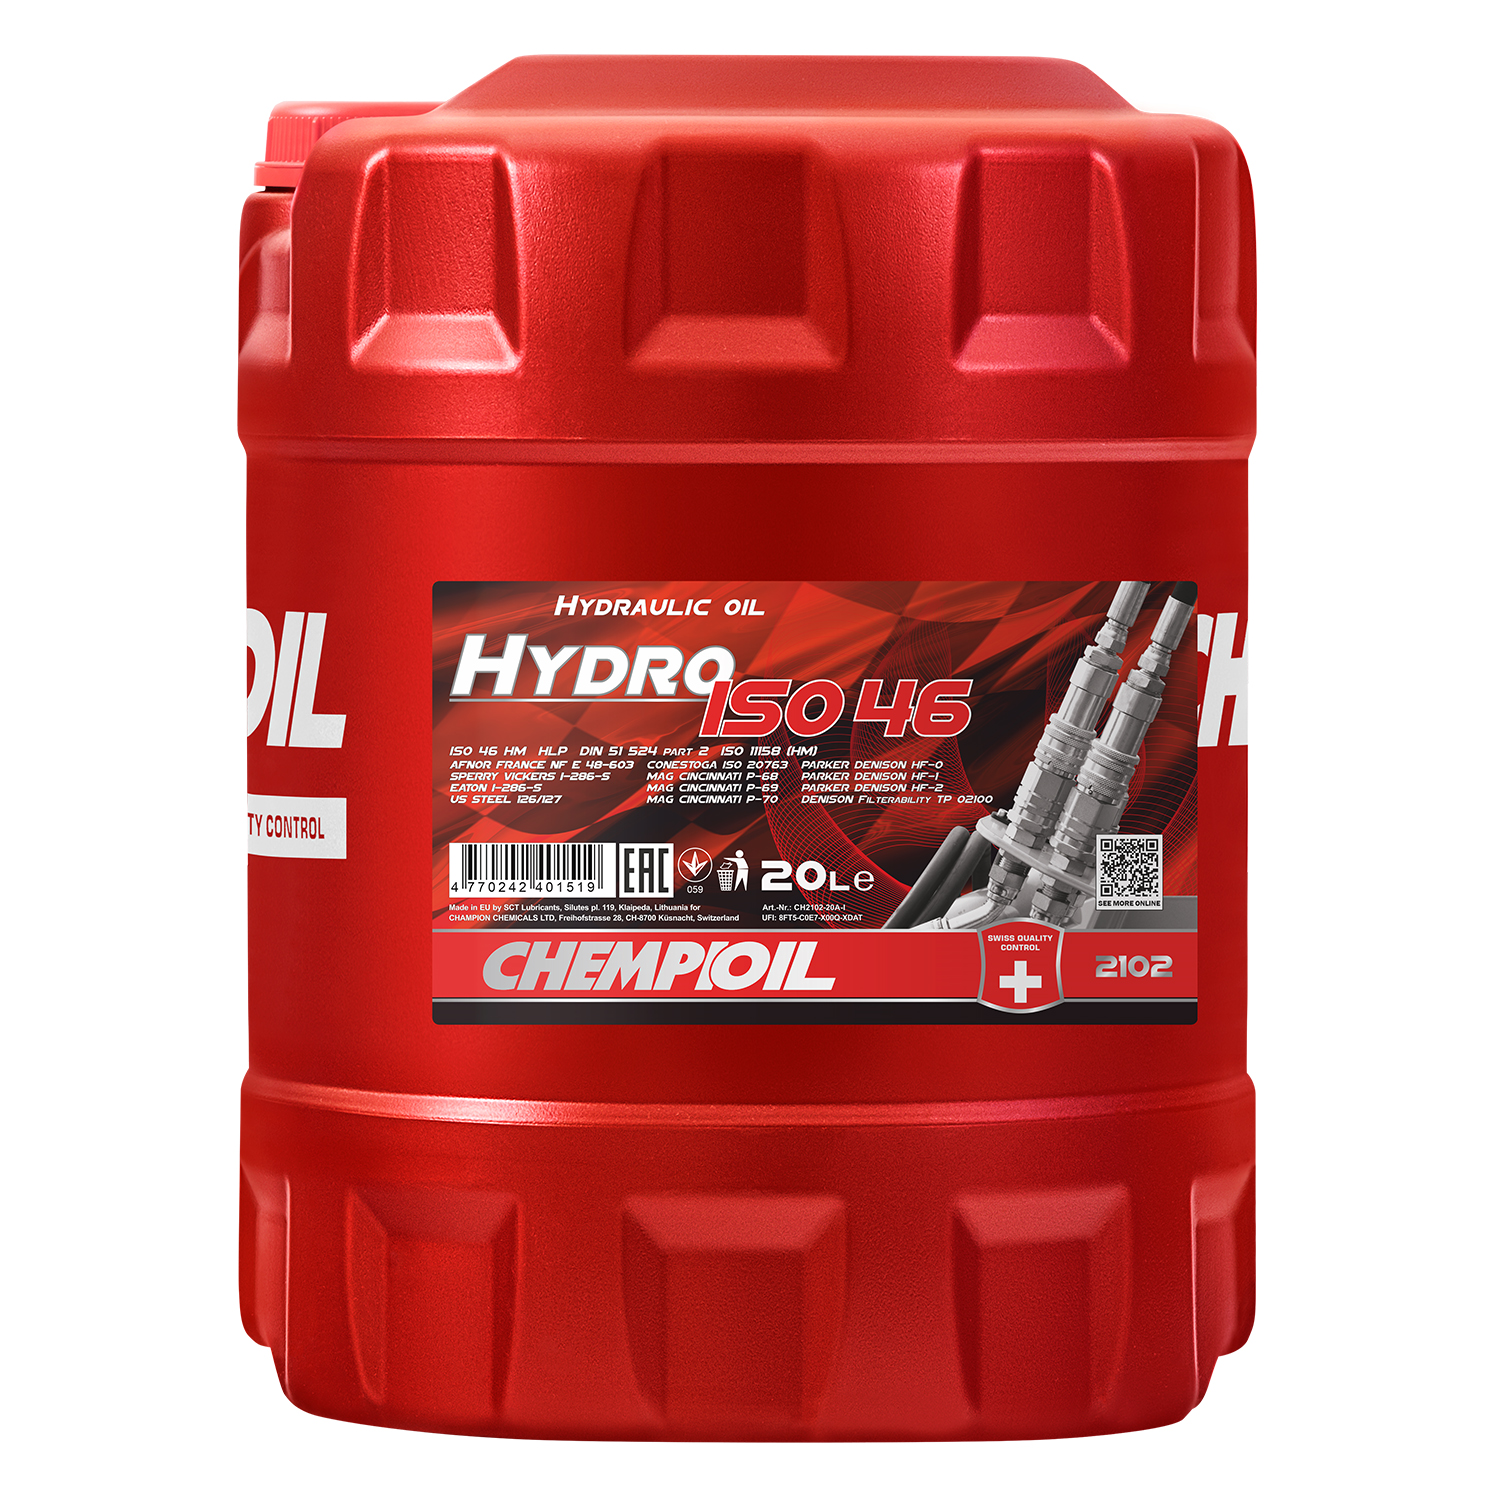 CHEMPIOIL Hydro ISO 46 hydraulics fluid, HLP 46, Hydraulic Oil, Lubricants